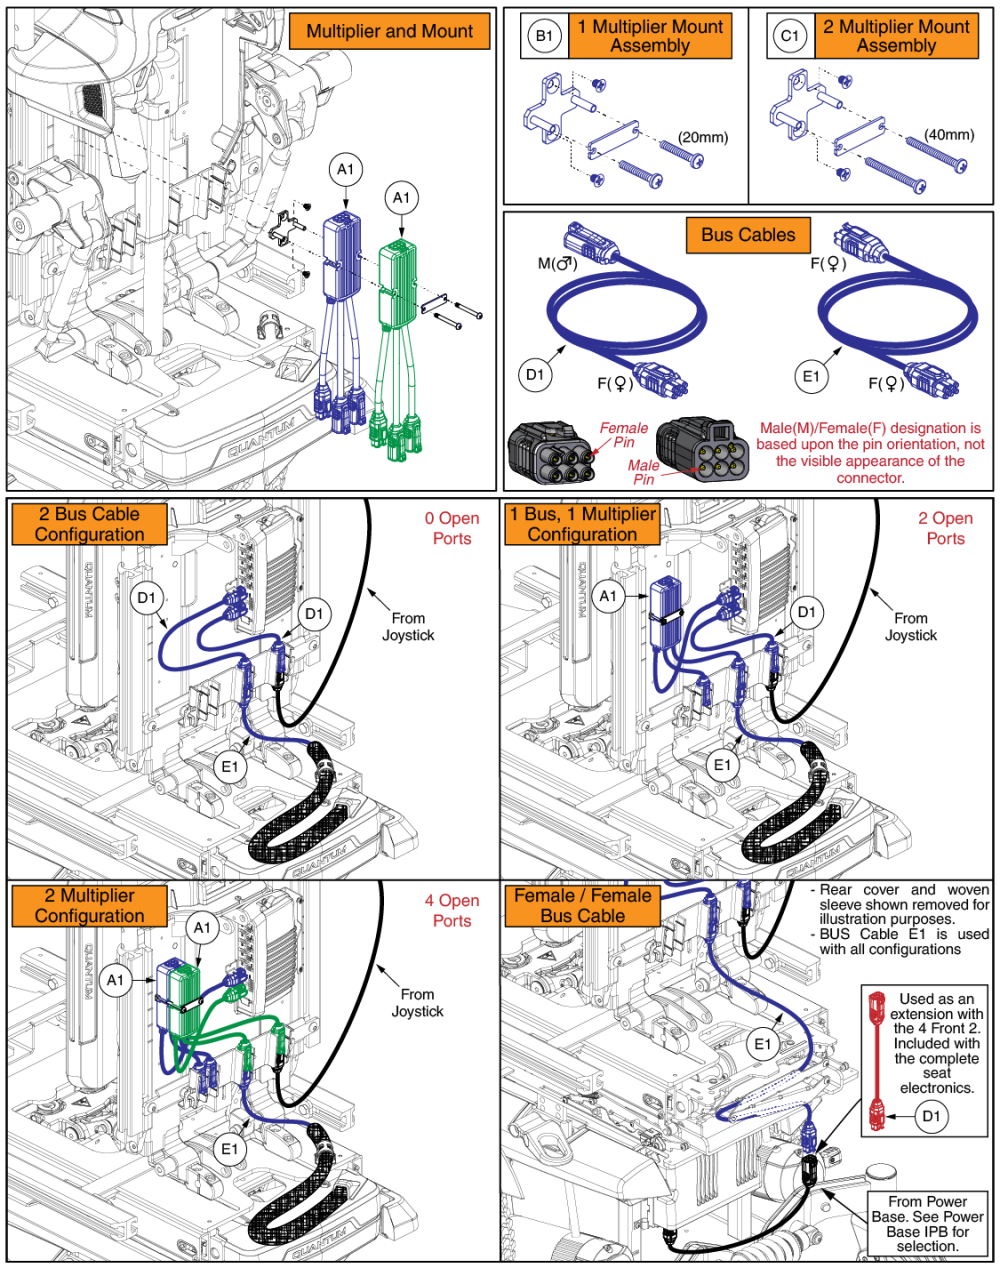 Q-logic 3 Multiplier Harness, Mounts, & Bus Cables, Tru Balance® 4 parts diagram